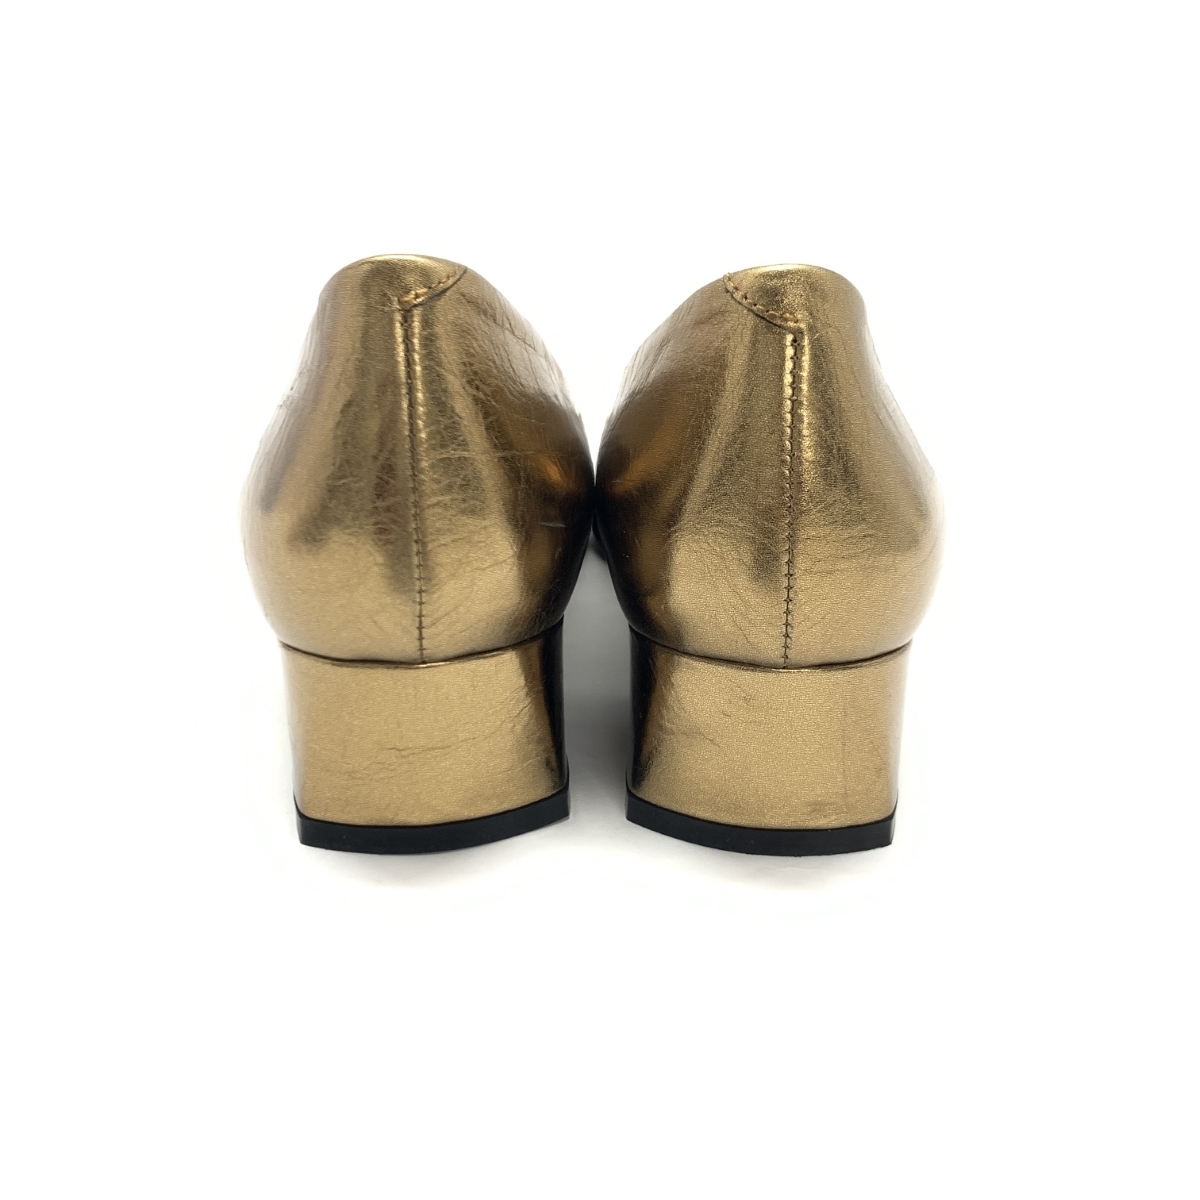  прекрасный товар *Roger Vivierroje vi vi e туфли-лодочки 35* Gold цвет кожа квадратное plate женский обувь обувь shoes